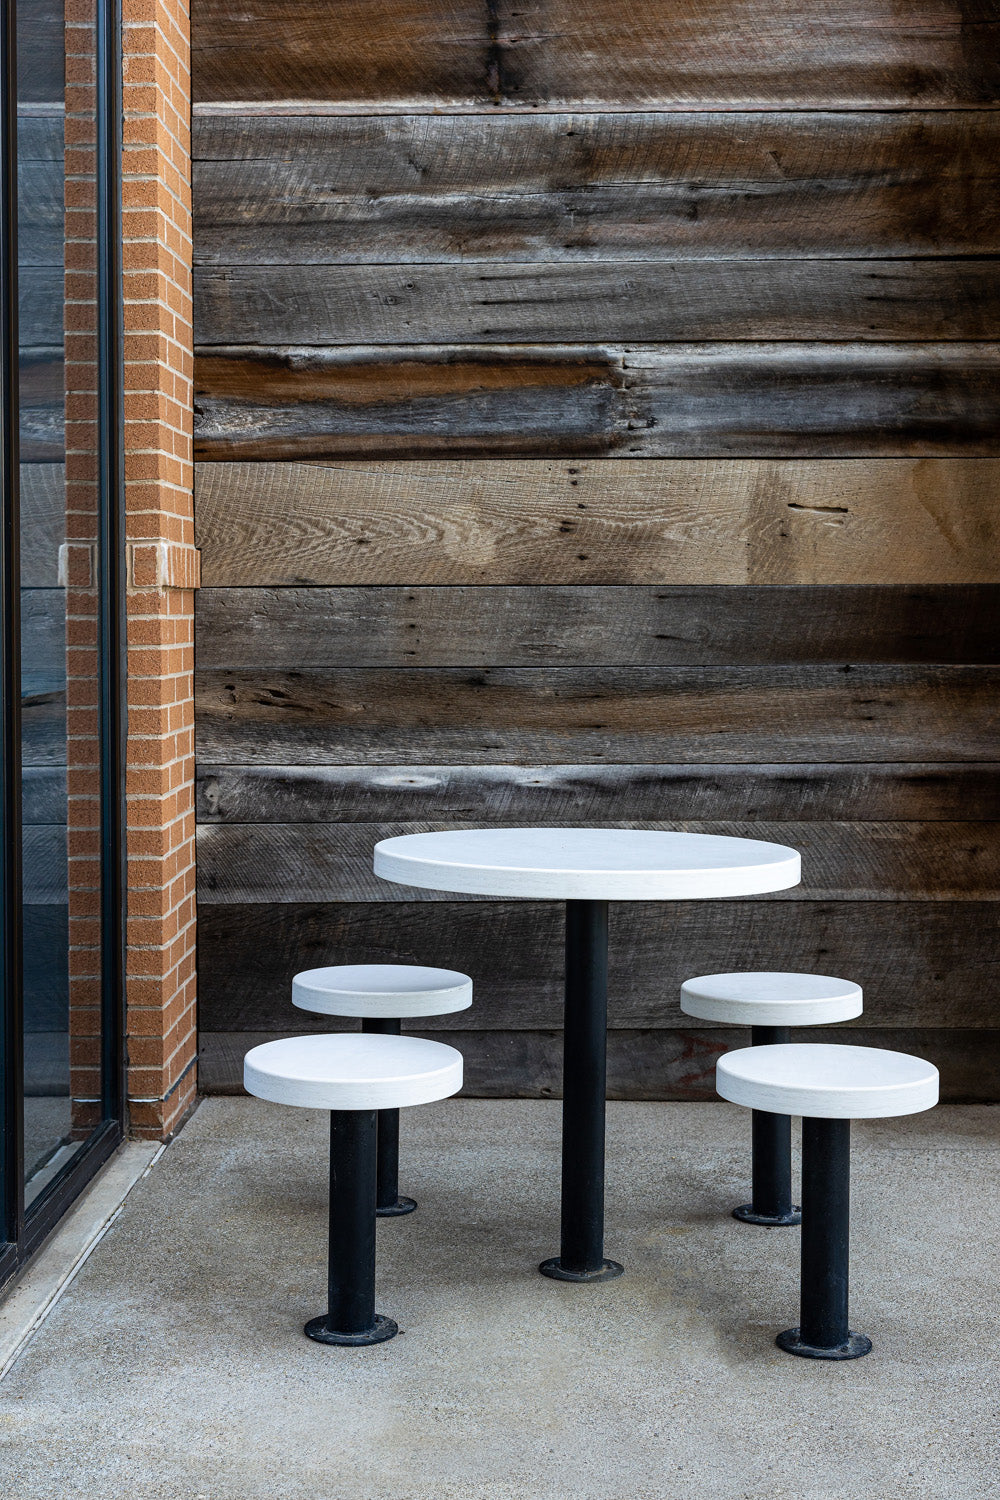 Outdoor restaurant furniture by Edgework Creative